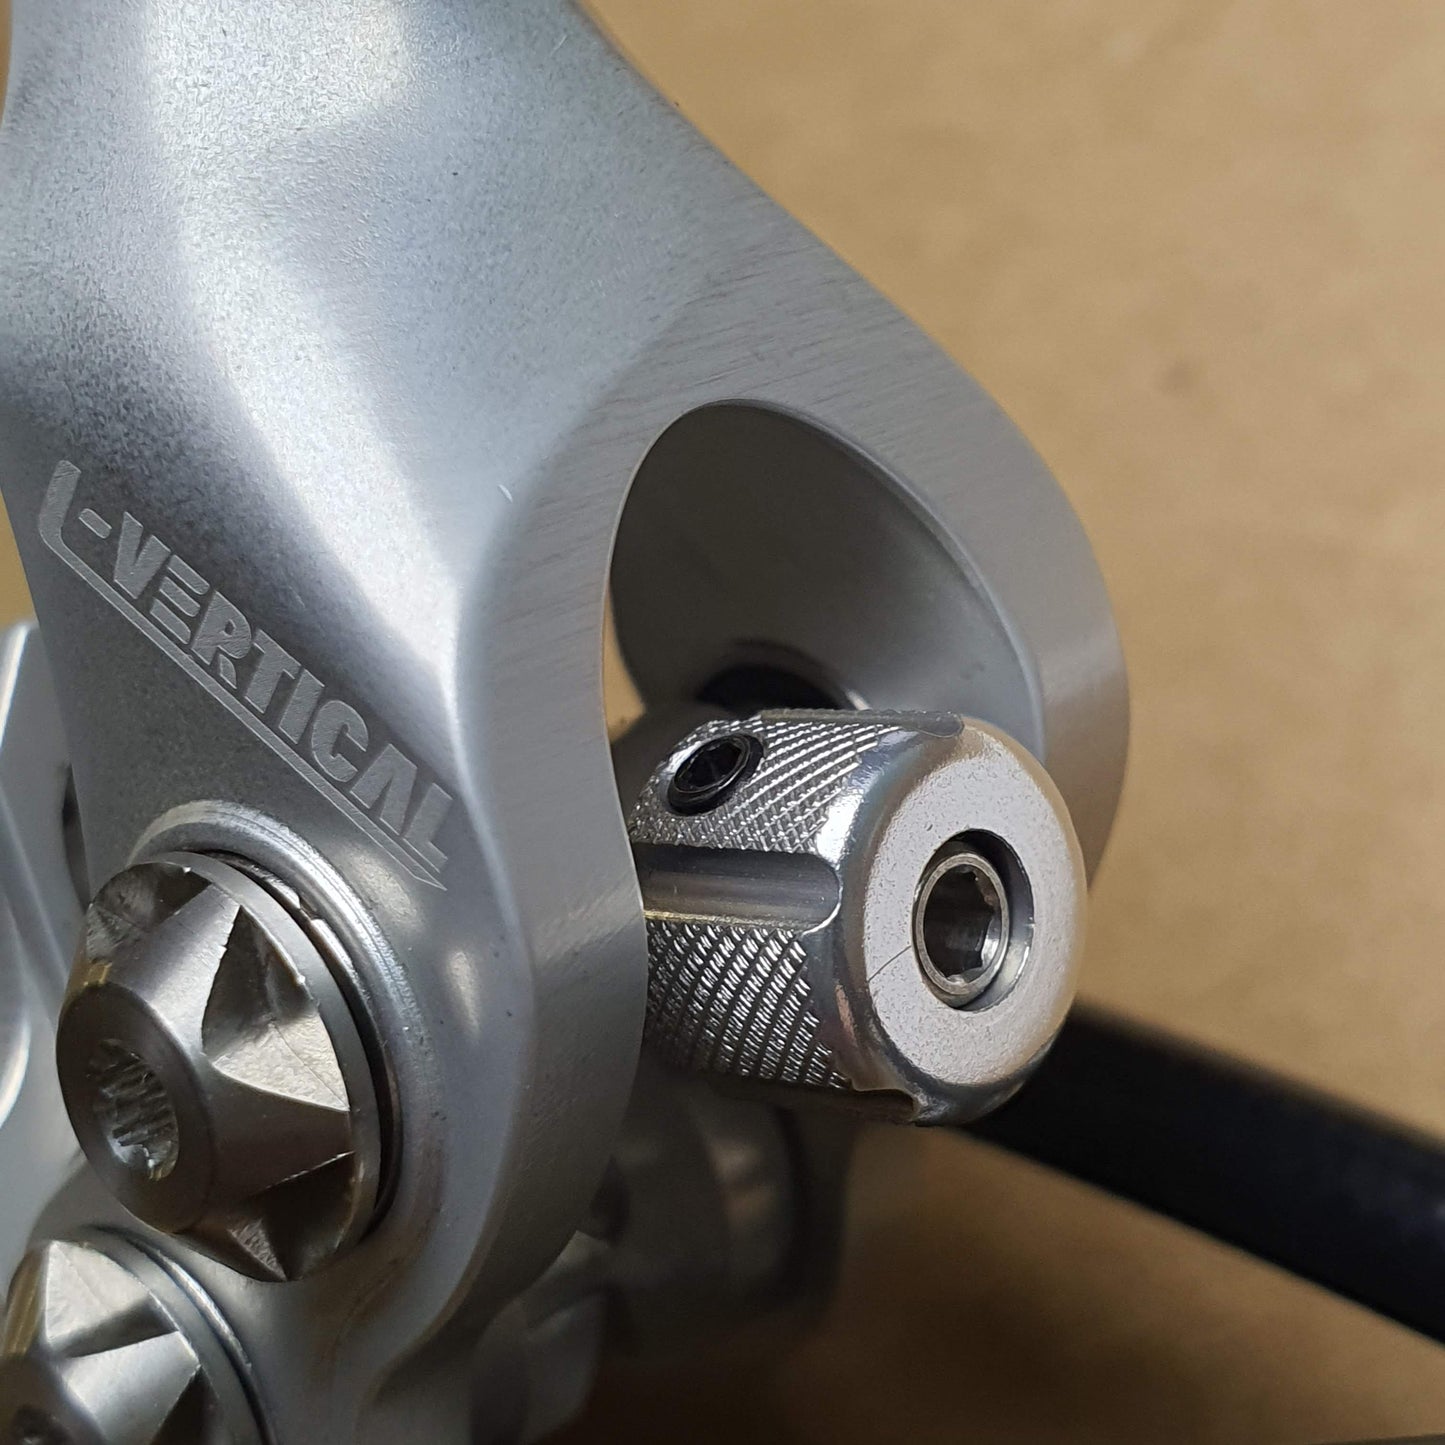 Lewis LV2 Doppelkolbenbremse für XC-Trial-Bike | Superleicht | Kostenfreier weltweiter Versand